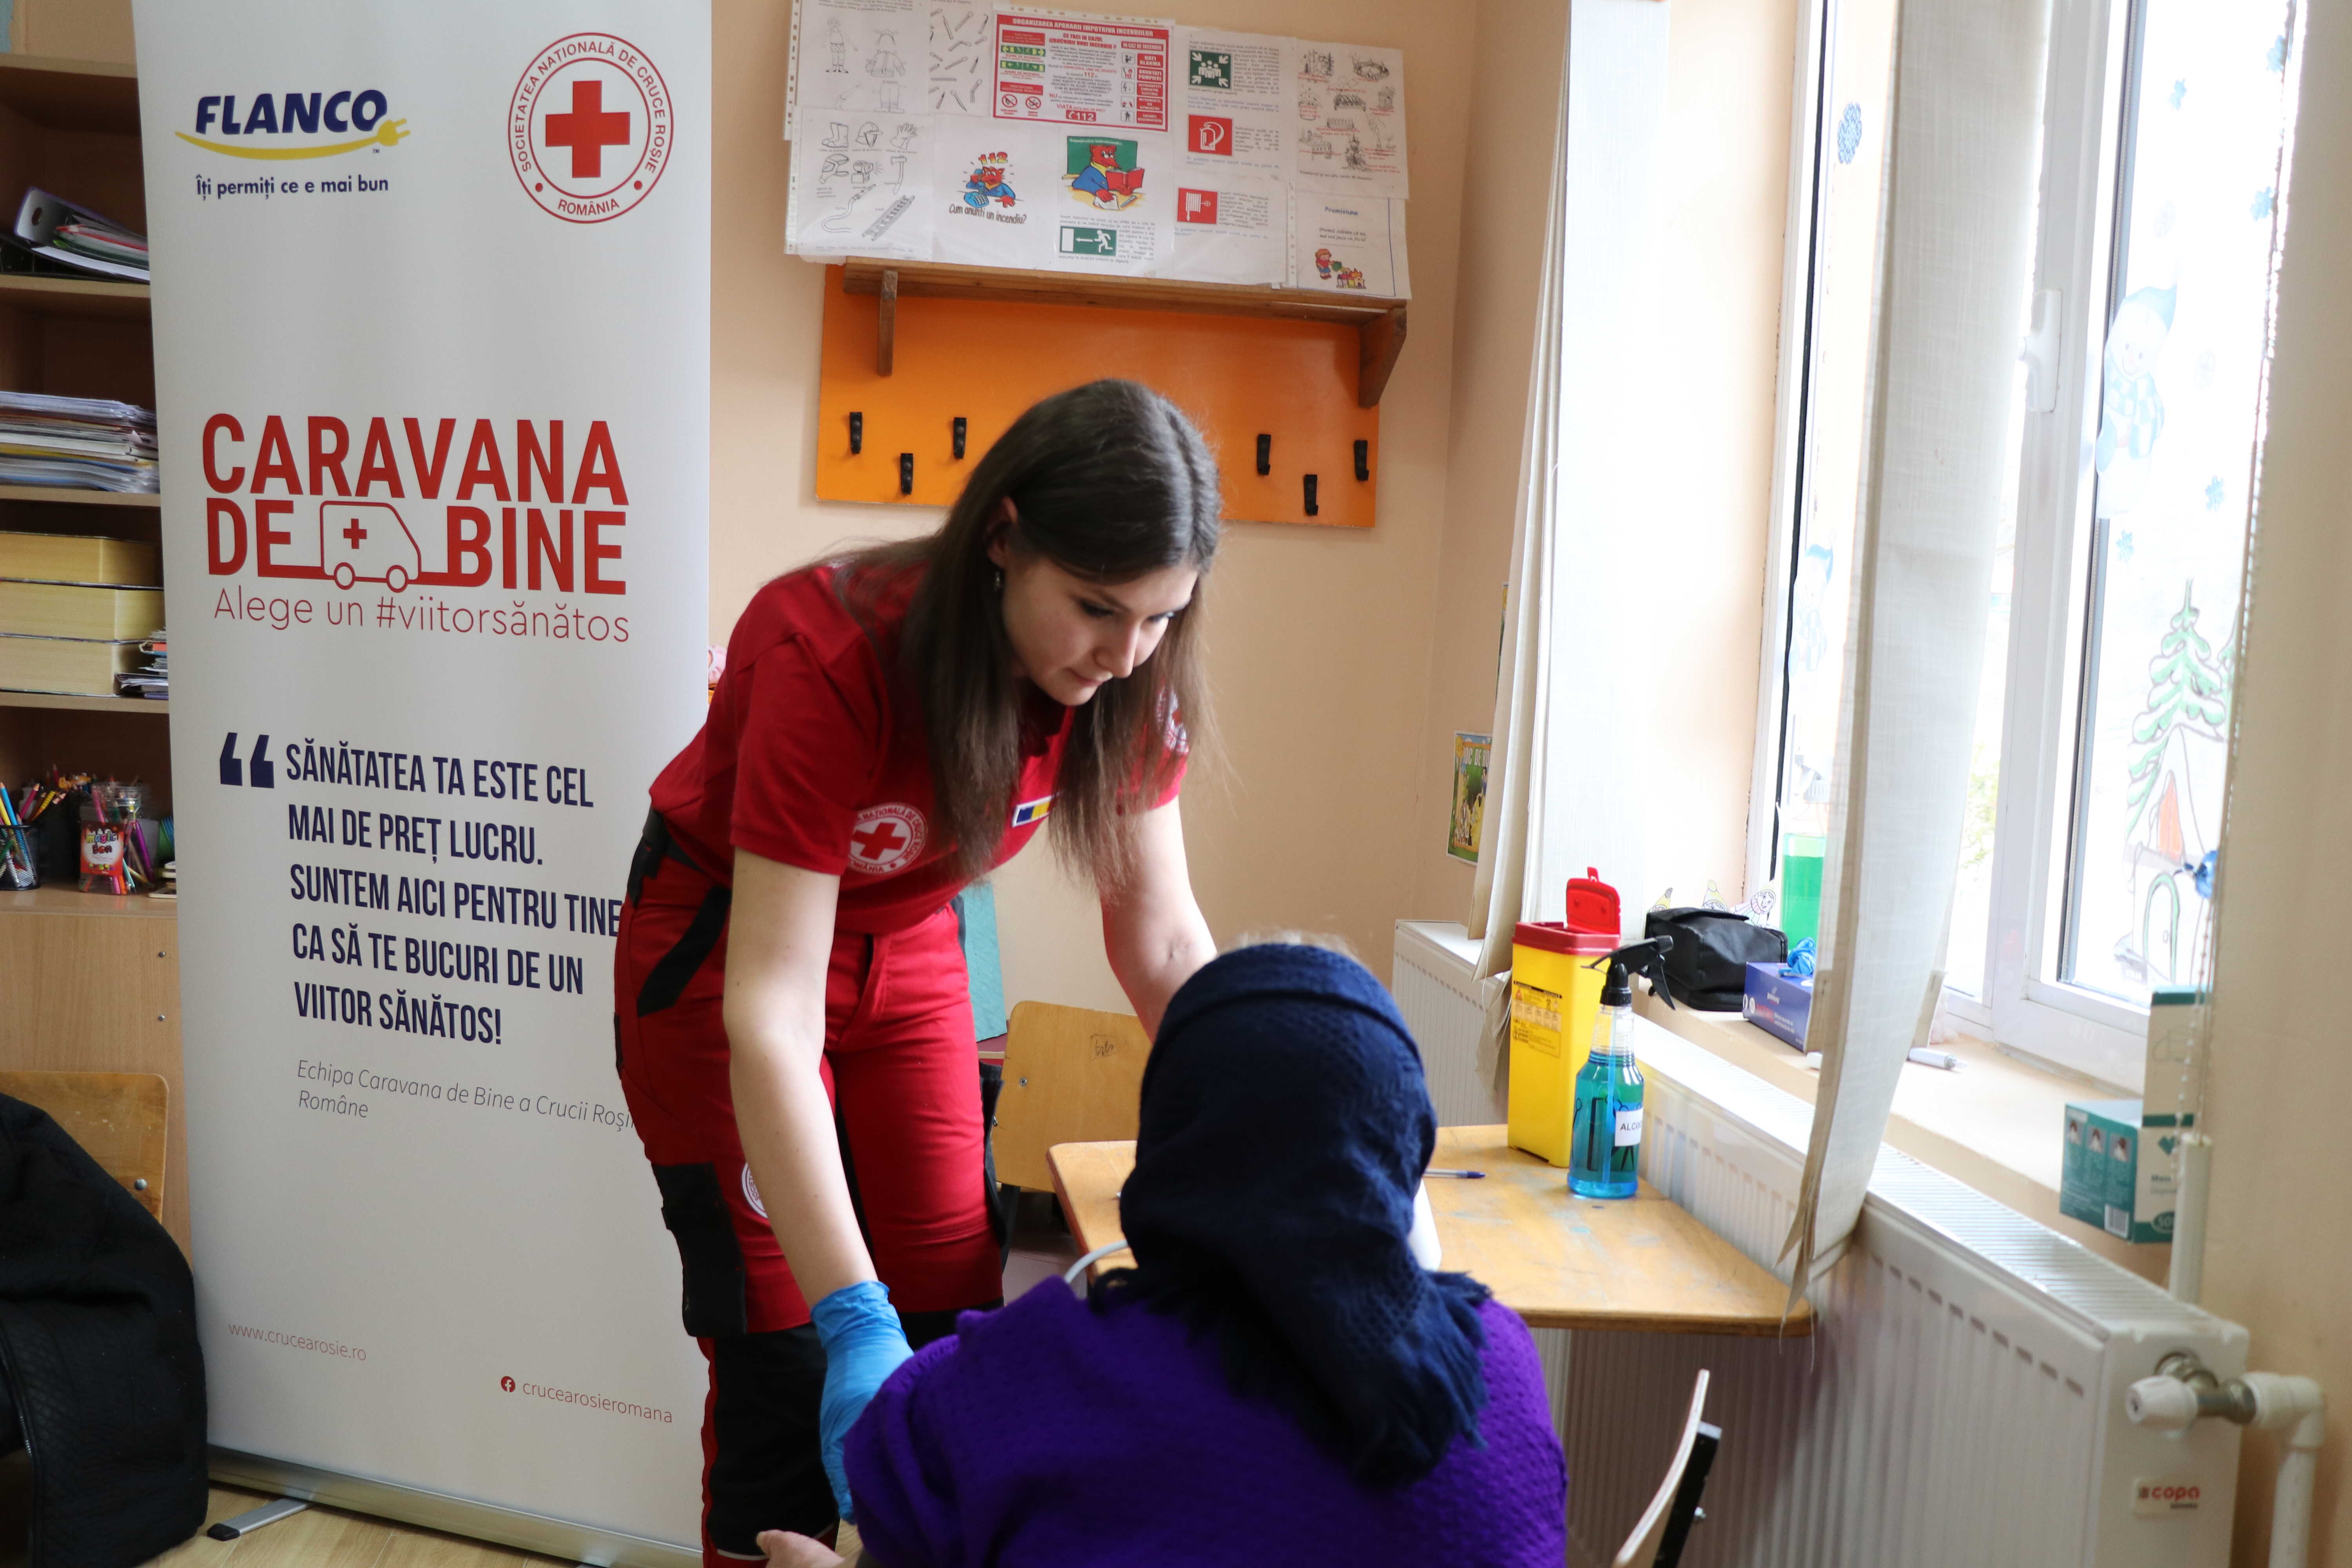 Flanco sprijină financiar proiectul Caravana de Bine  al Crucii Roșii Române: peste 800 de consultații gratuite în doar două luni